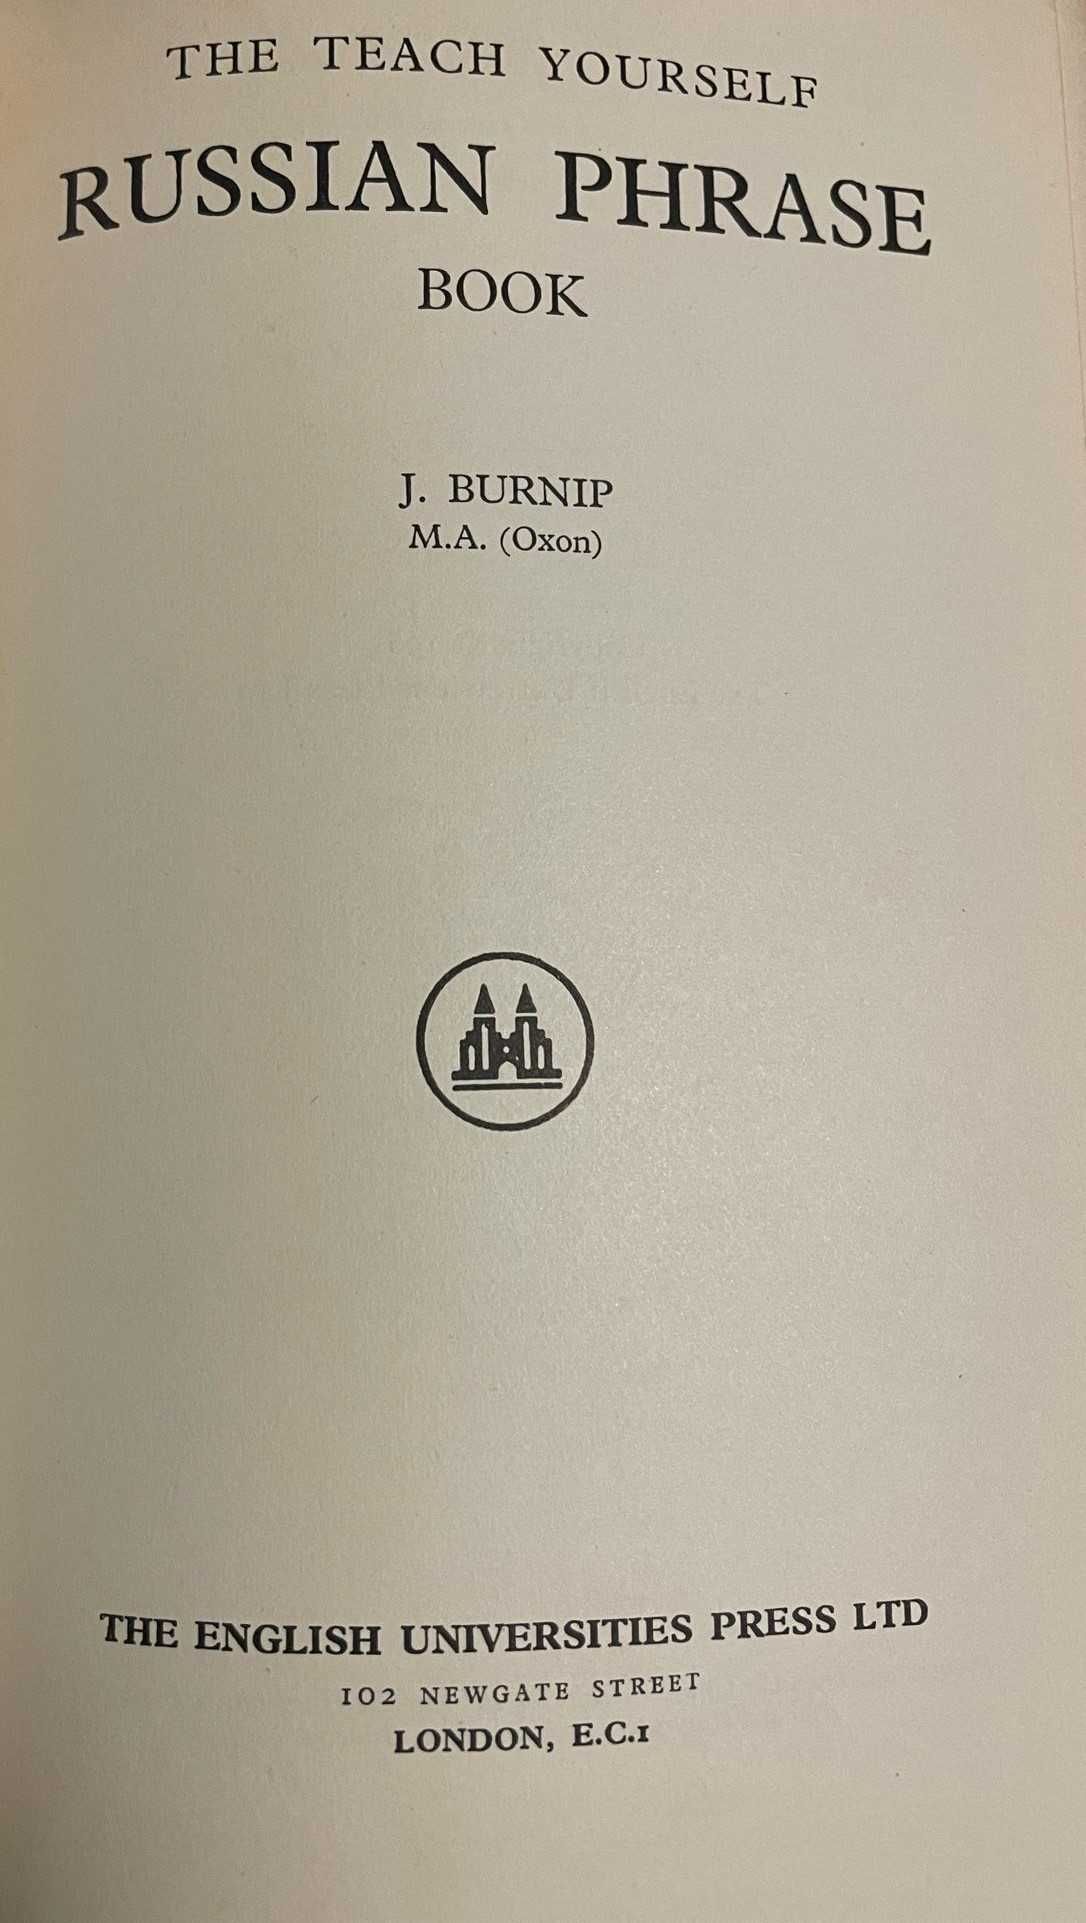 Livro “Russian Phrase Book” 1961